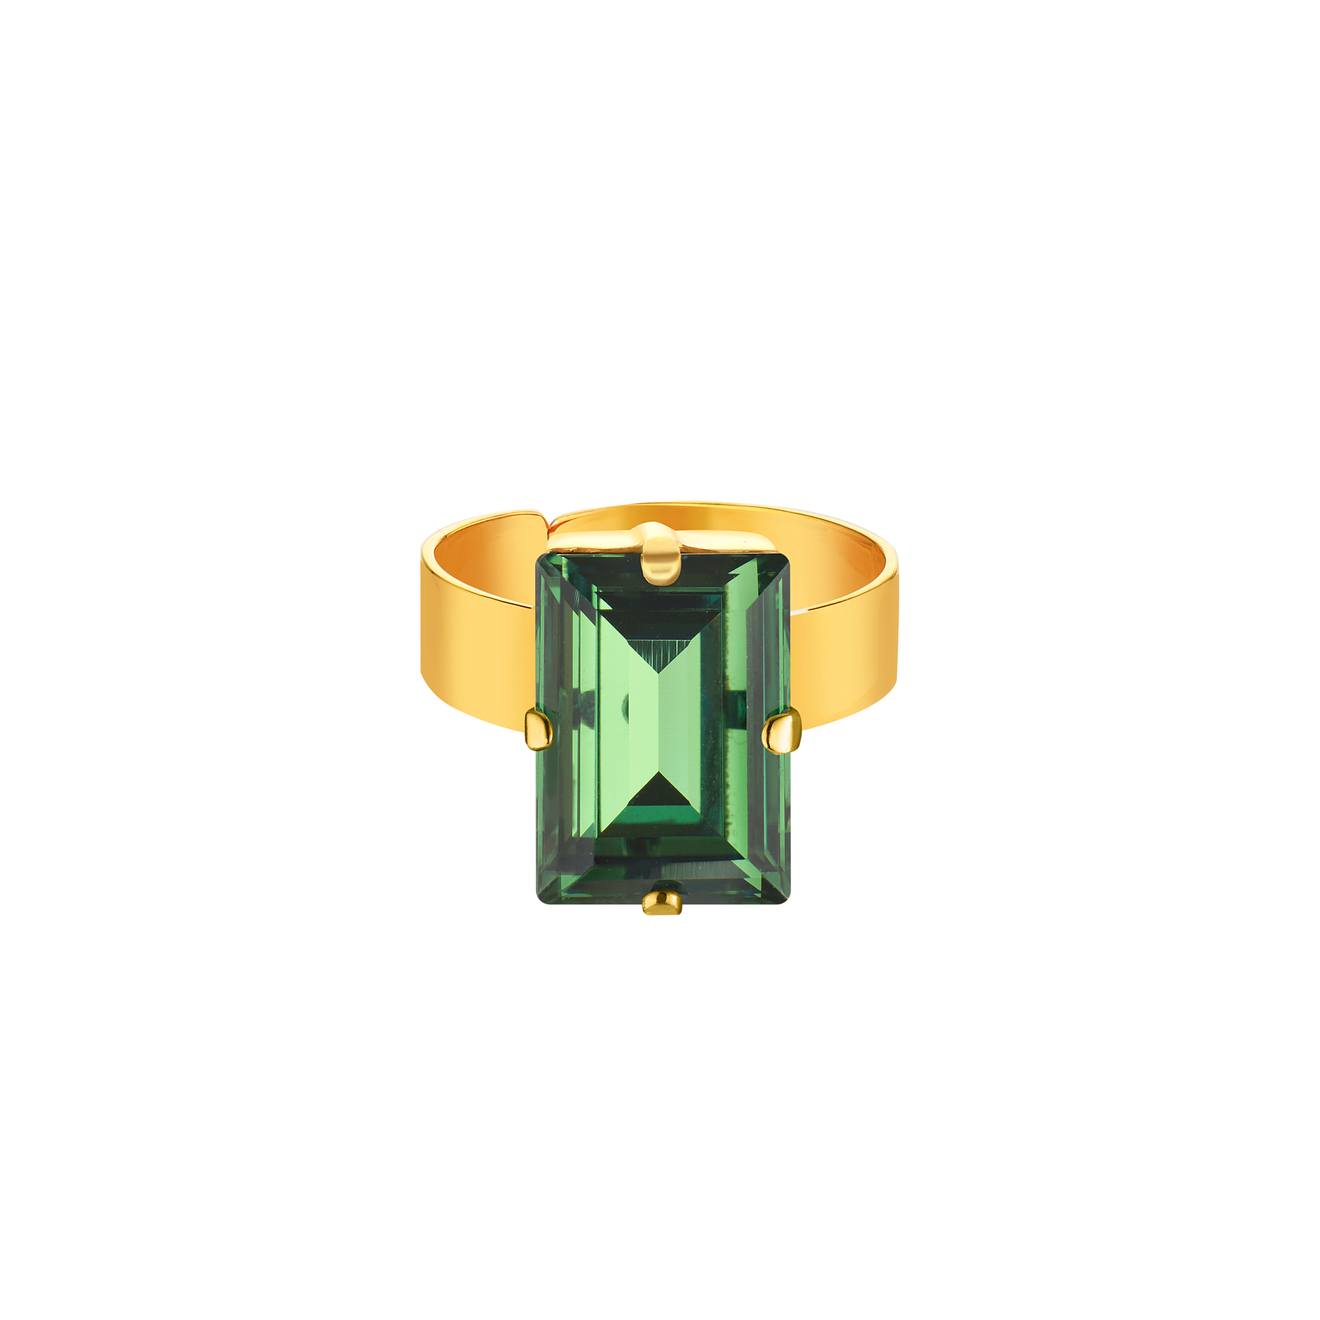 Phenomenal Studio Позолоченное кольцо с регулируемым размером и крупным кристаллом Baguette Erinite Gold phenomenal studio позолоченное кольцо с кристаллами